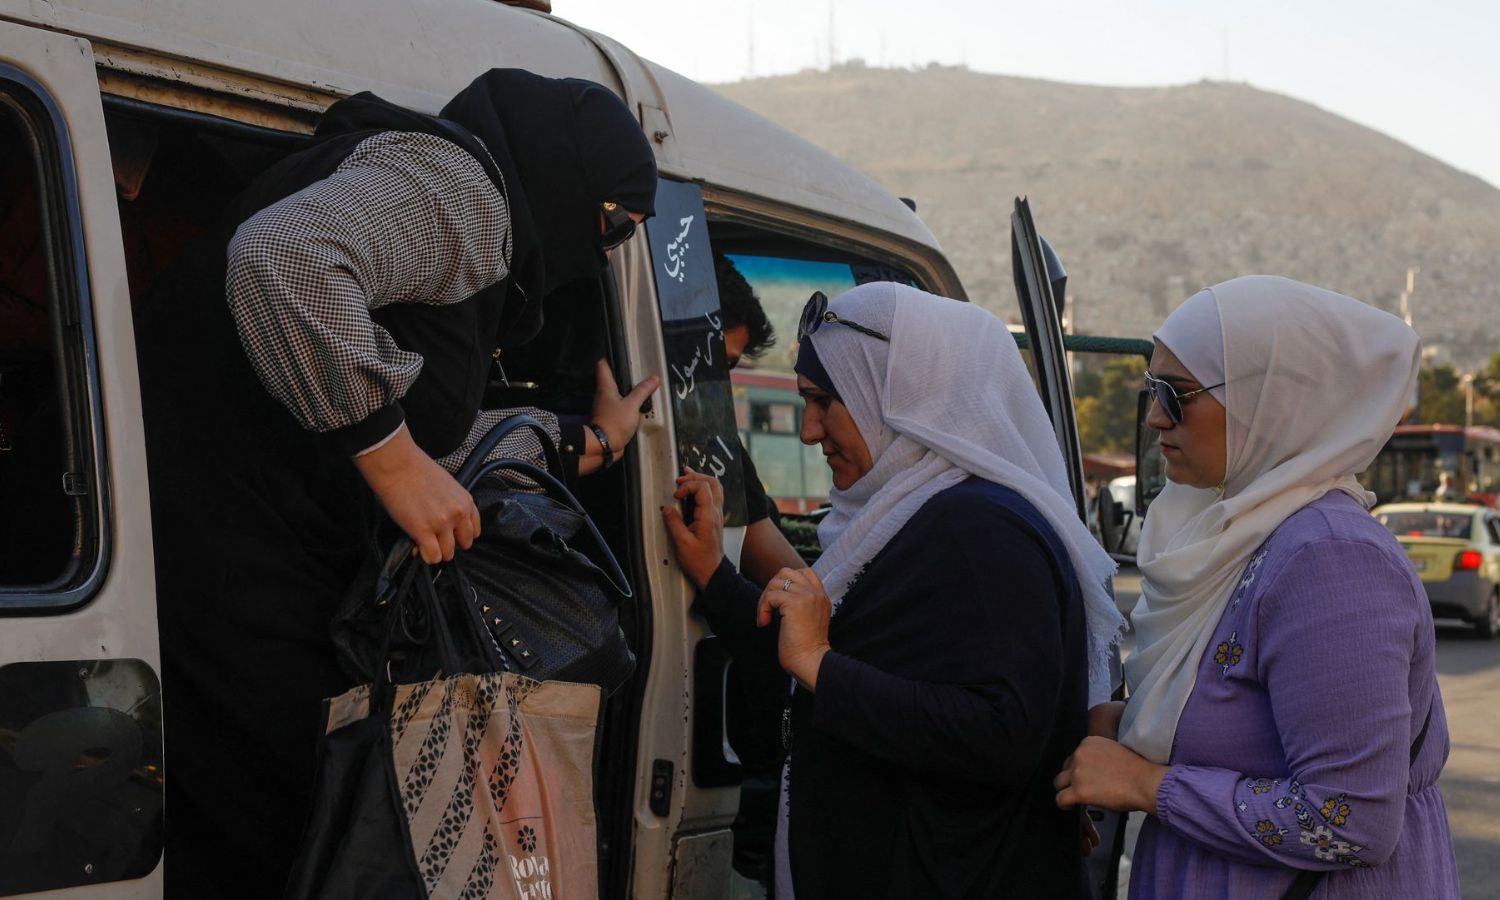 سيّدتان تتنظران نزول راكبة لتصعدا في ميكروباص في العاصمة السورية دمشق- 20 من تموز 2022 (رويترز)